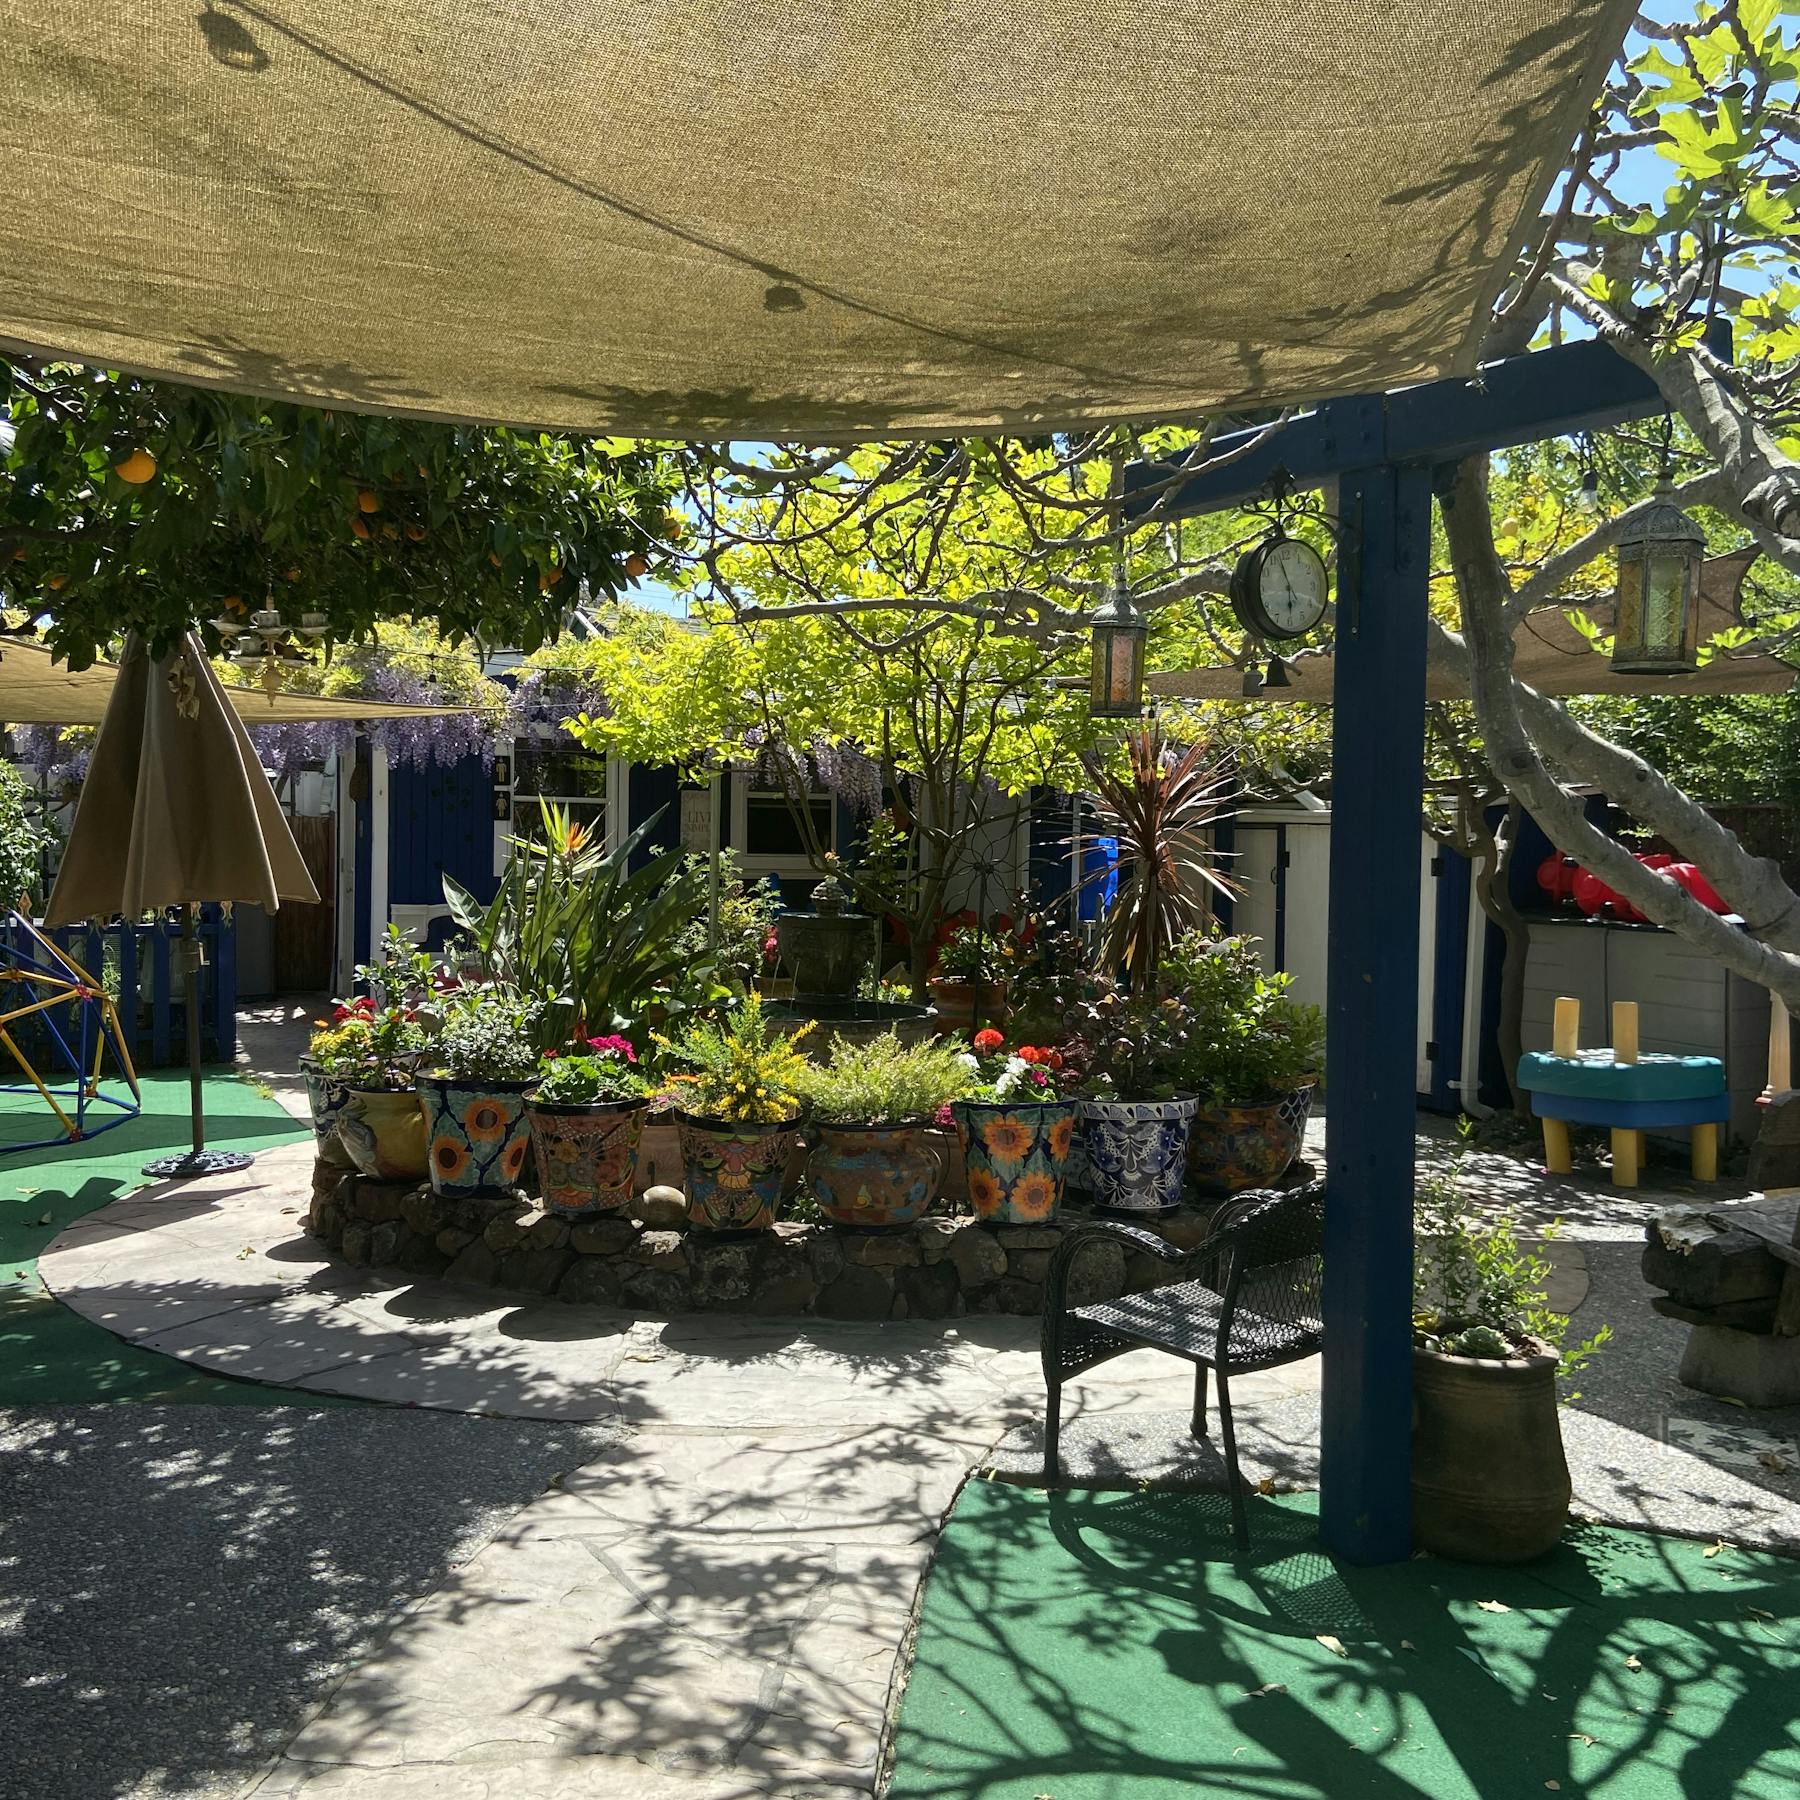 Almas Childrens Garden - Home Daycare In Oakland Ca - Winnie